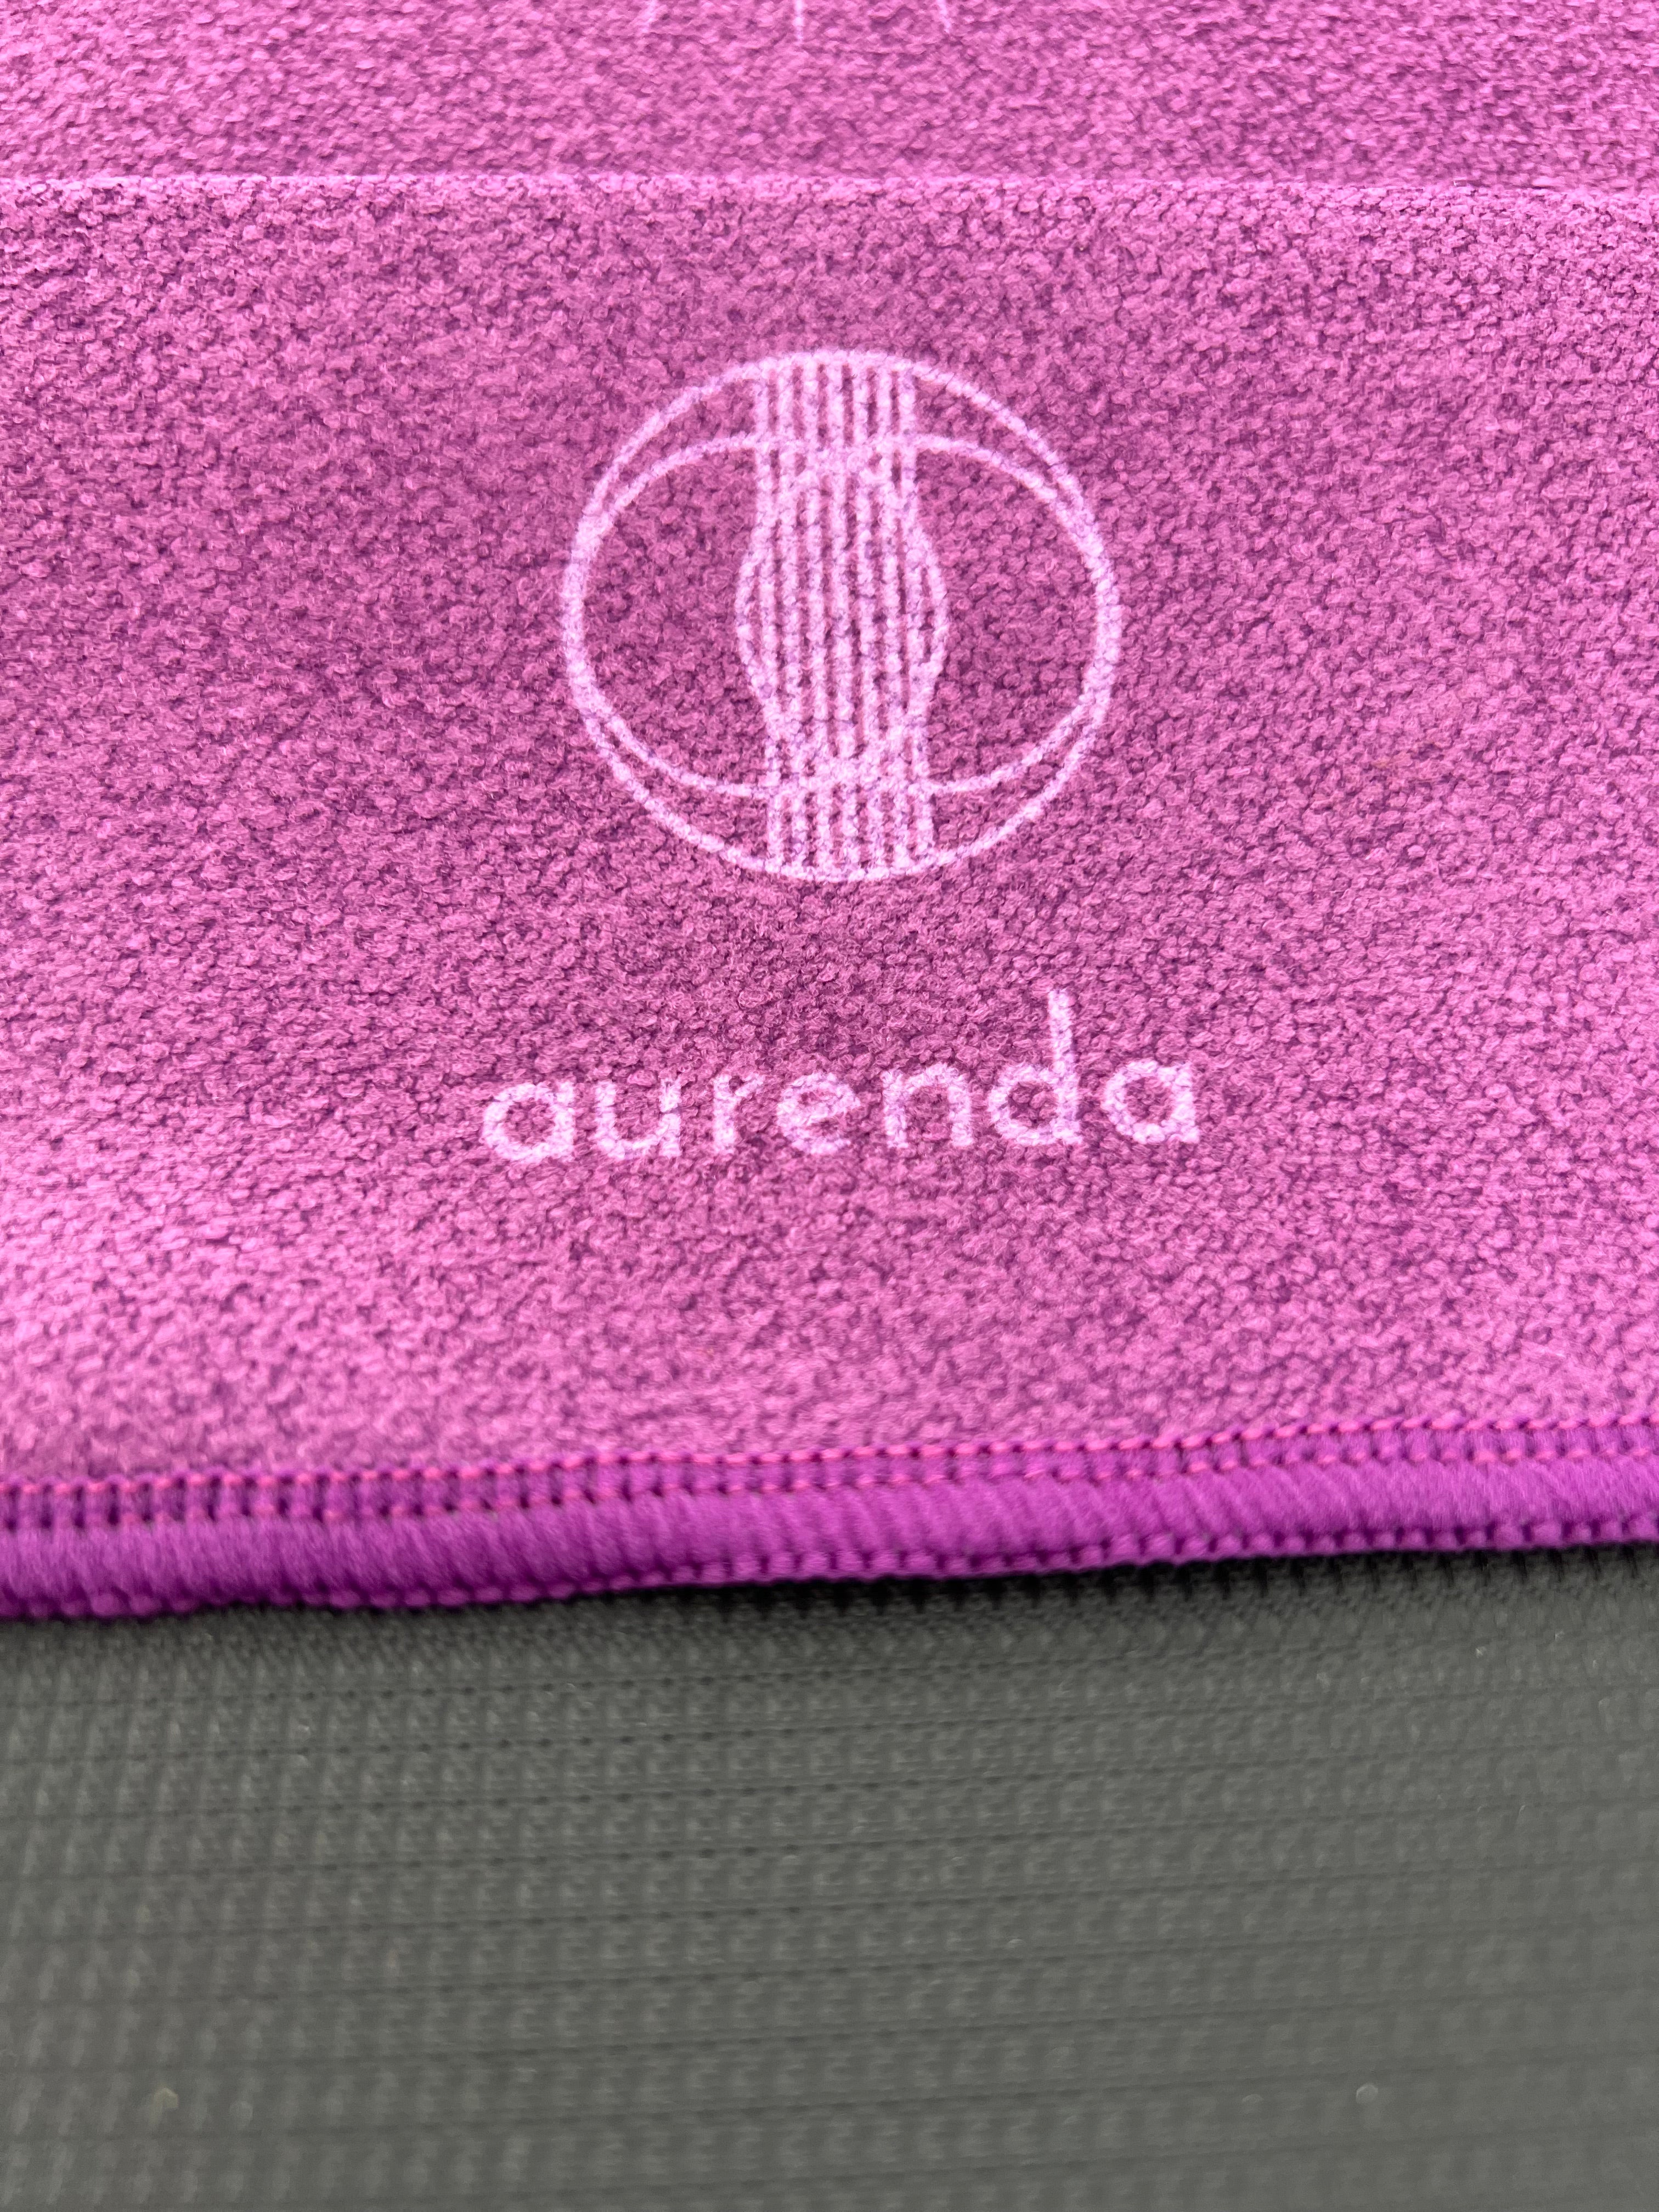 Violet Yoga Towel